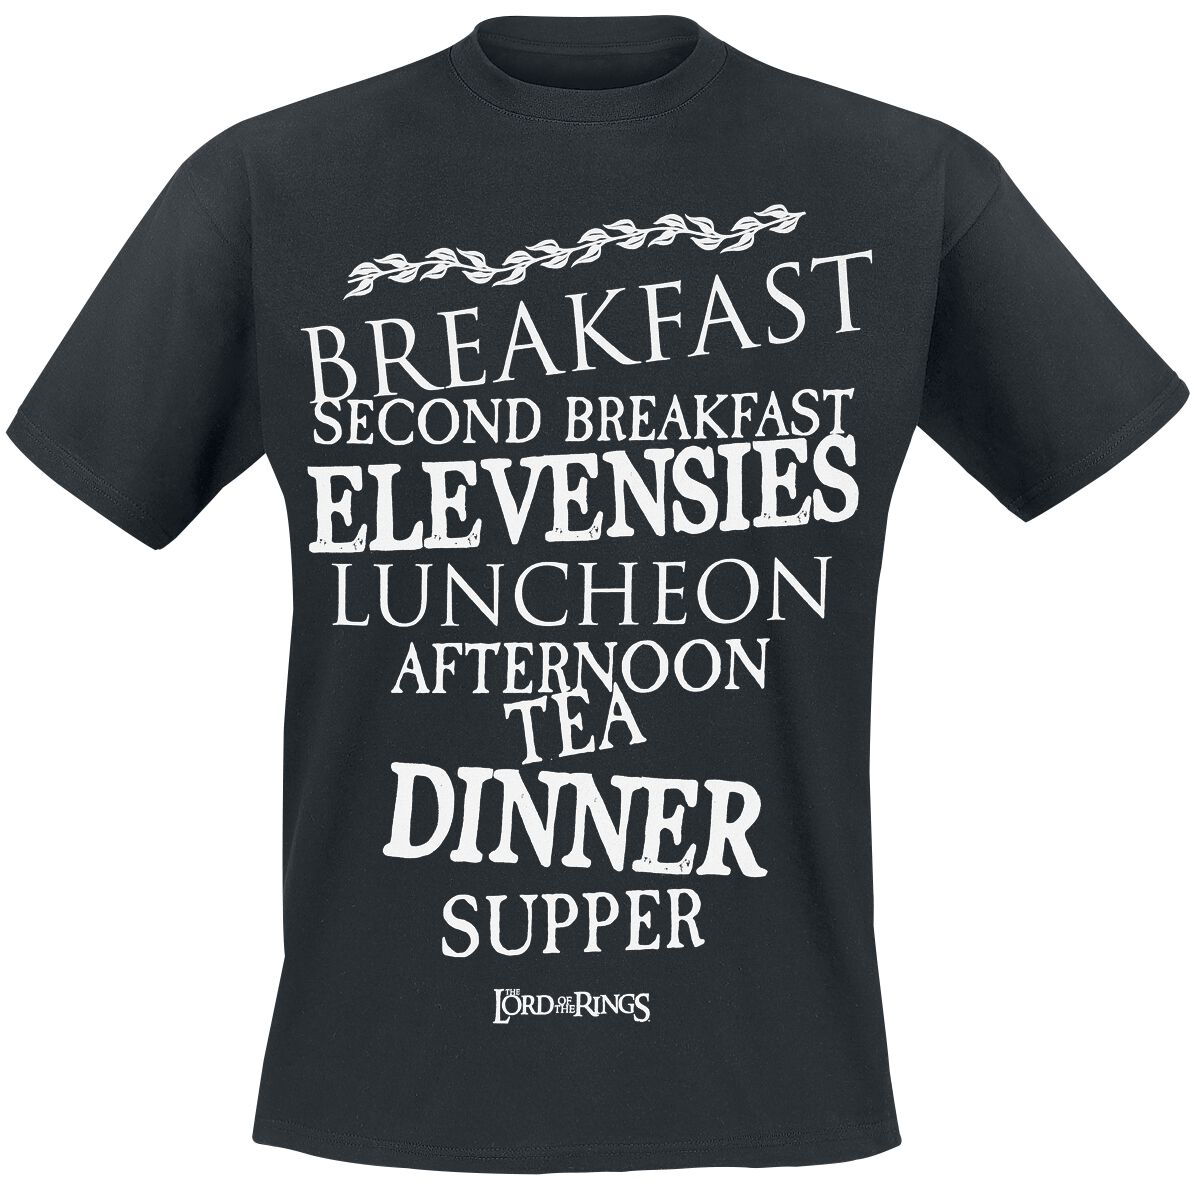 Der Herr der Ringe T-Shirt - Hobbit Meals - S bis 3XL - für Männer - Größe L - schwarz  - EMP exklusives Merchandise!